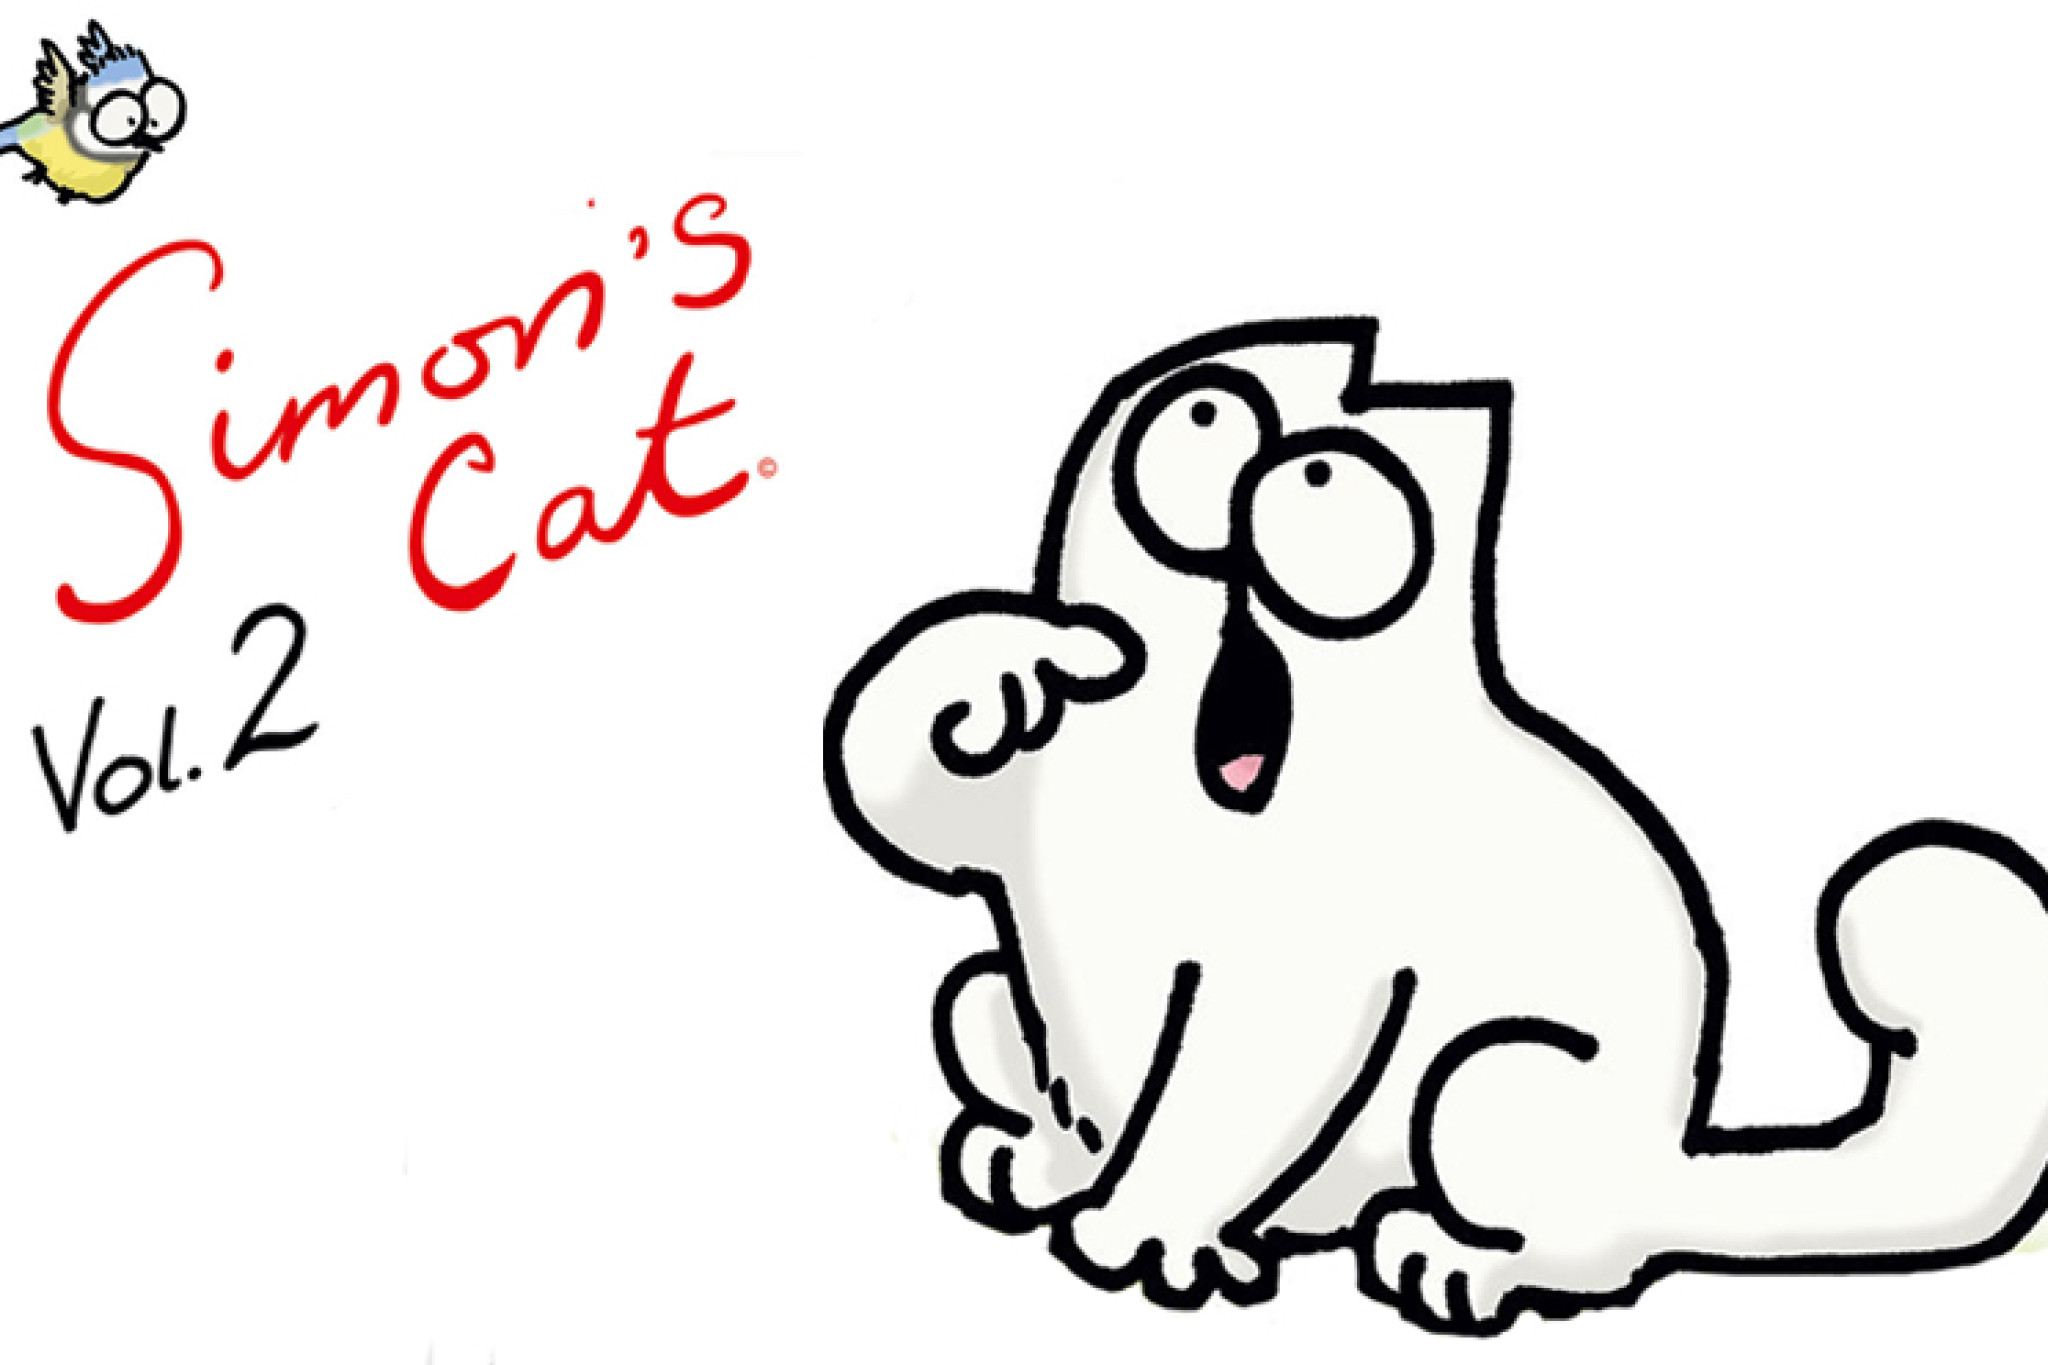 Neues von Simon's Cat auf DVD – gewinne Simon's Cat Fanartikel